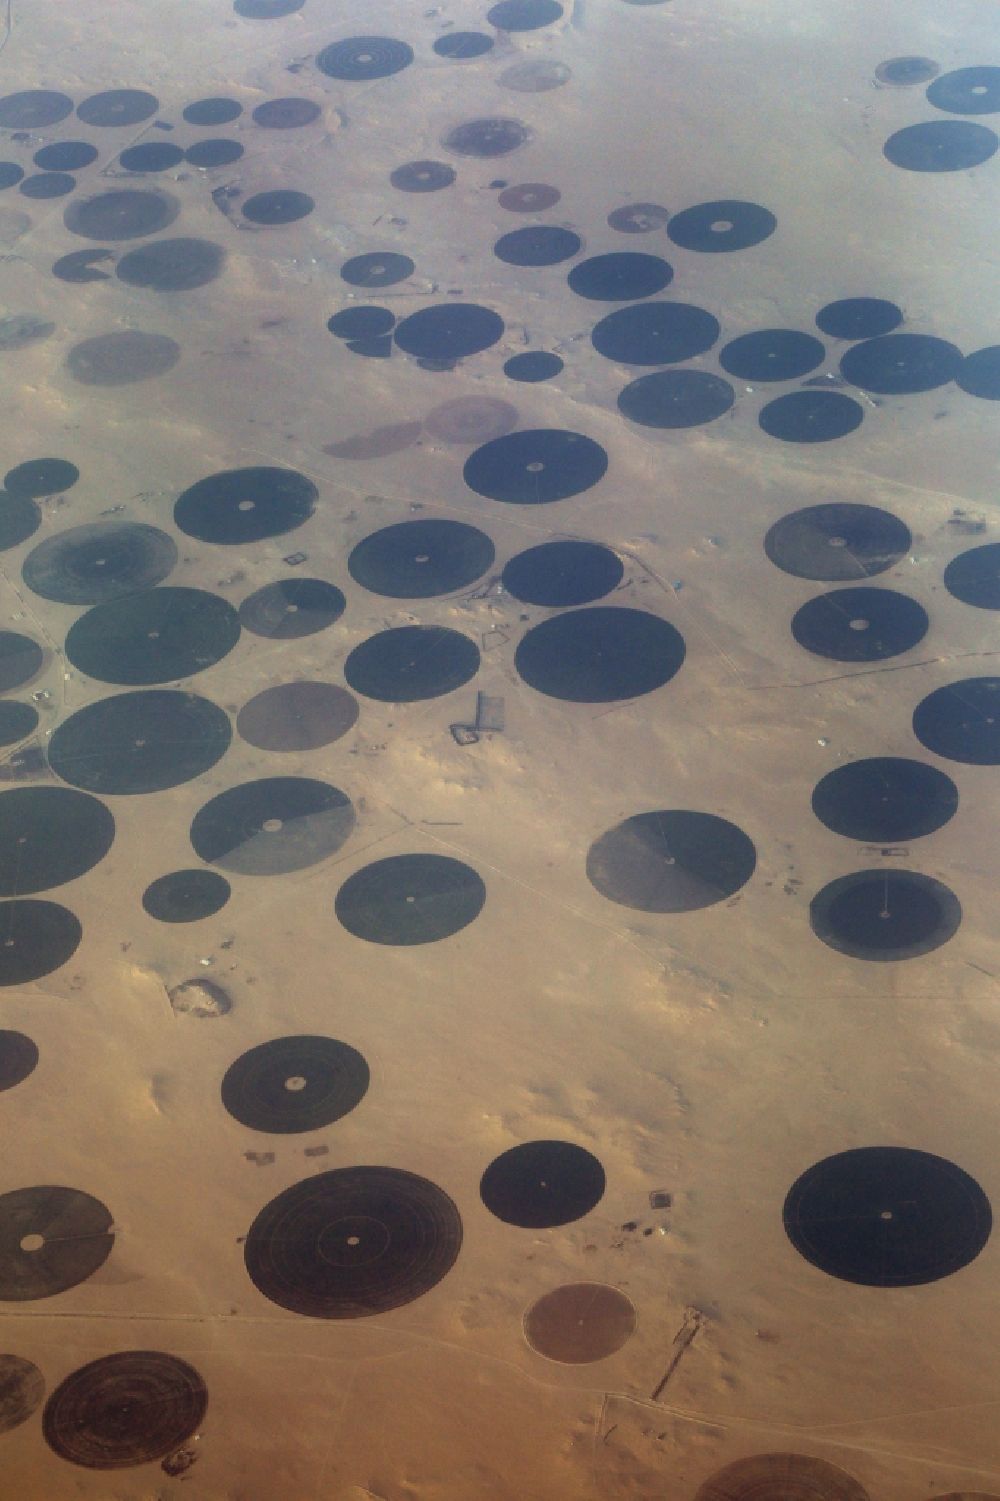 Qaryat Al Ulya von oben - Kreisförmige Bewässerungsanlagen in der Wüste bei Qaryat Al Ulya in Eastern Province, Saudi-Arabien